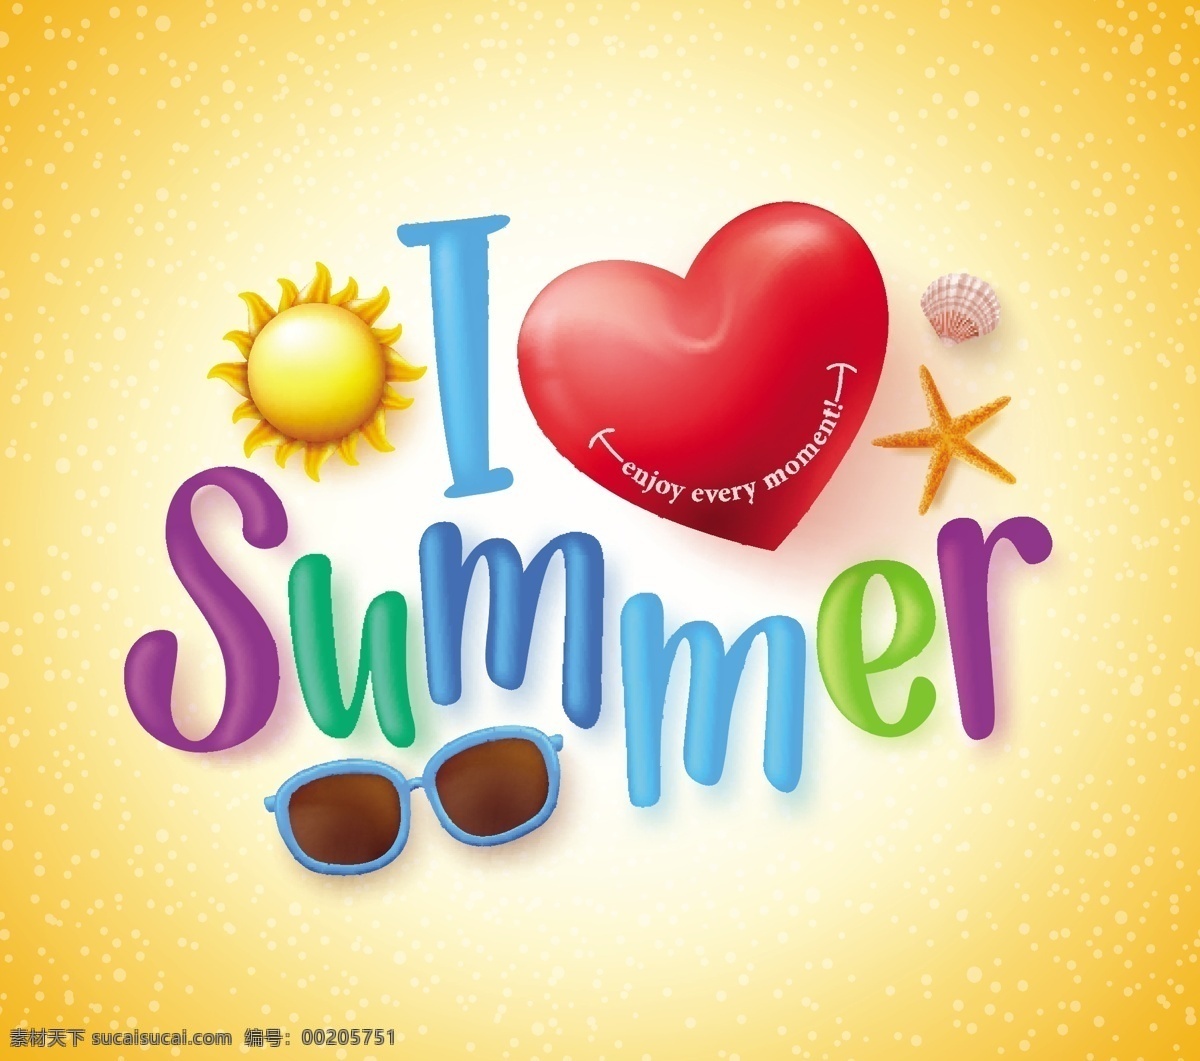 你好 夏天 创意 广告 元素 矢量 太阳 墨镜 沙滩球 艺术字 夏季 促销商场促销 夏日 summer 夏季海报 夏季主题 黄色